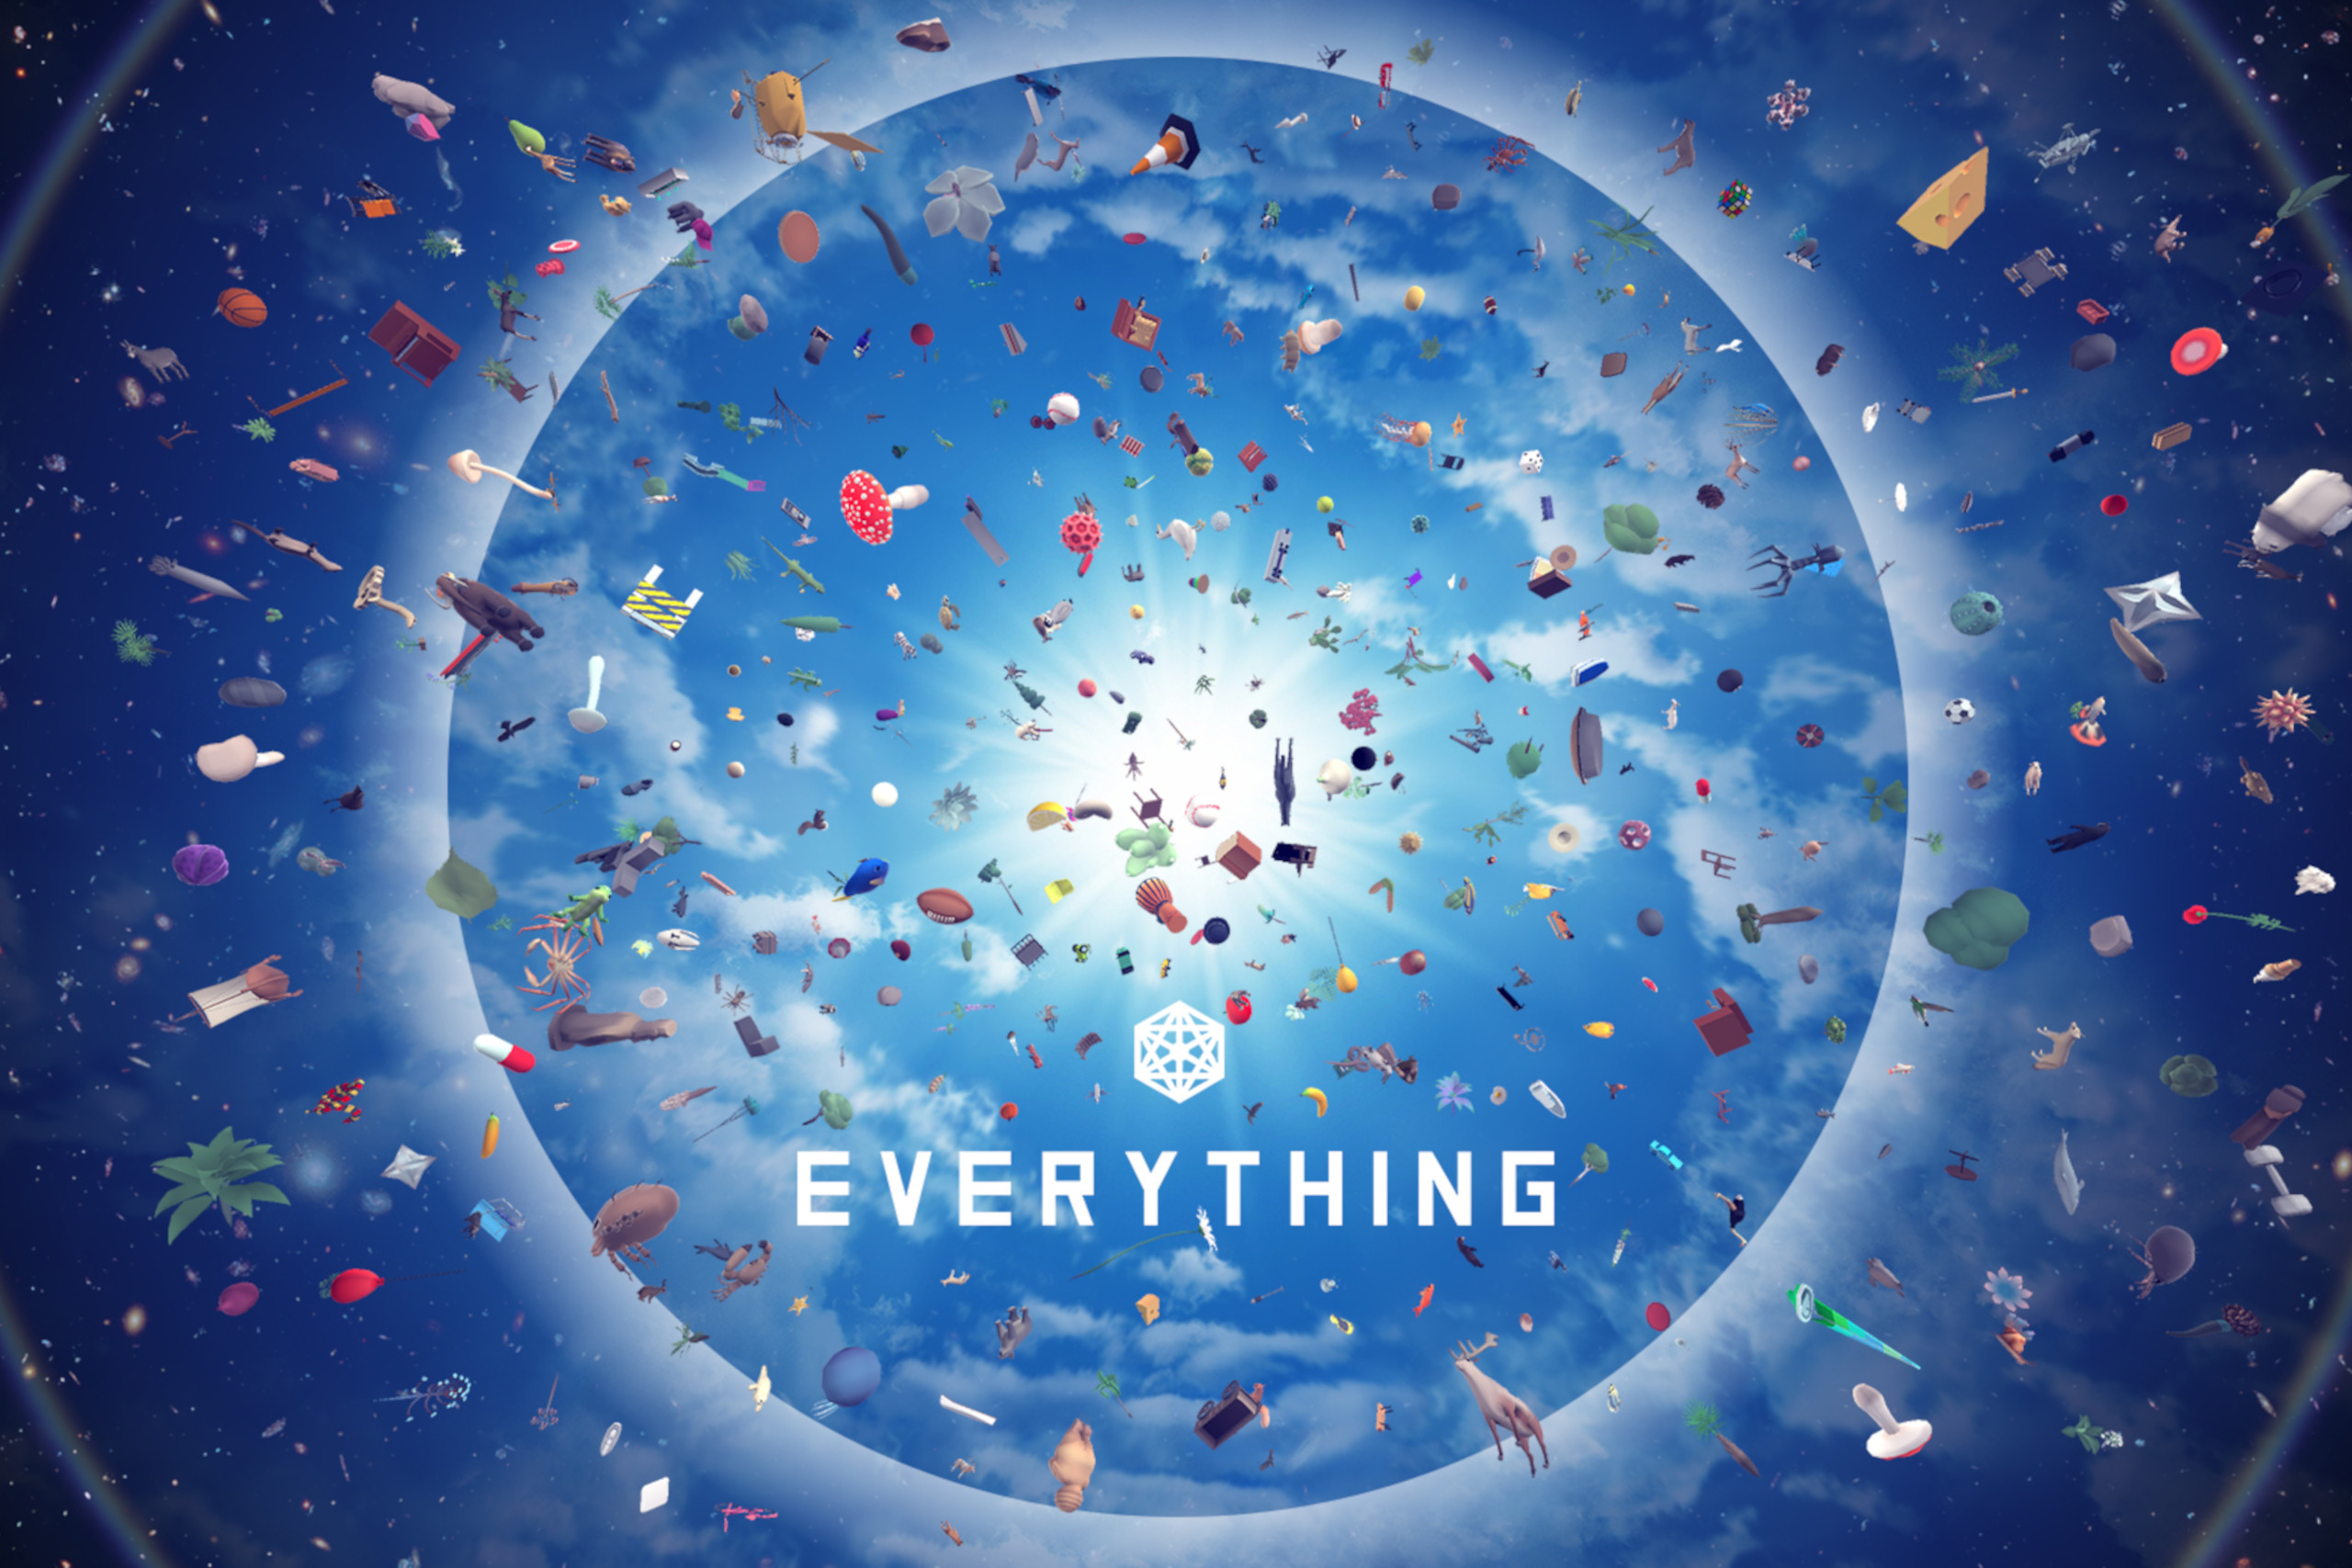 Zu sehen ist das Titelbild des Spiels Everything, bei dem verschiedene Objekte im Universum schweben.